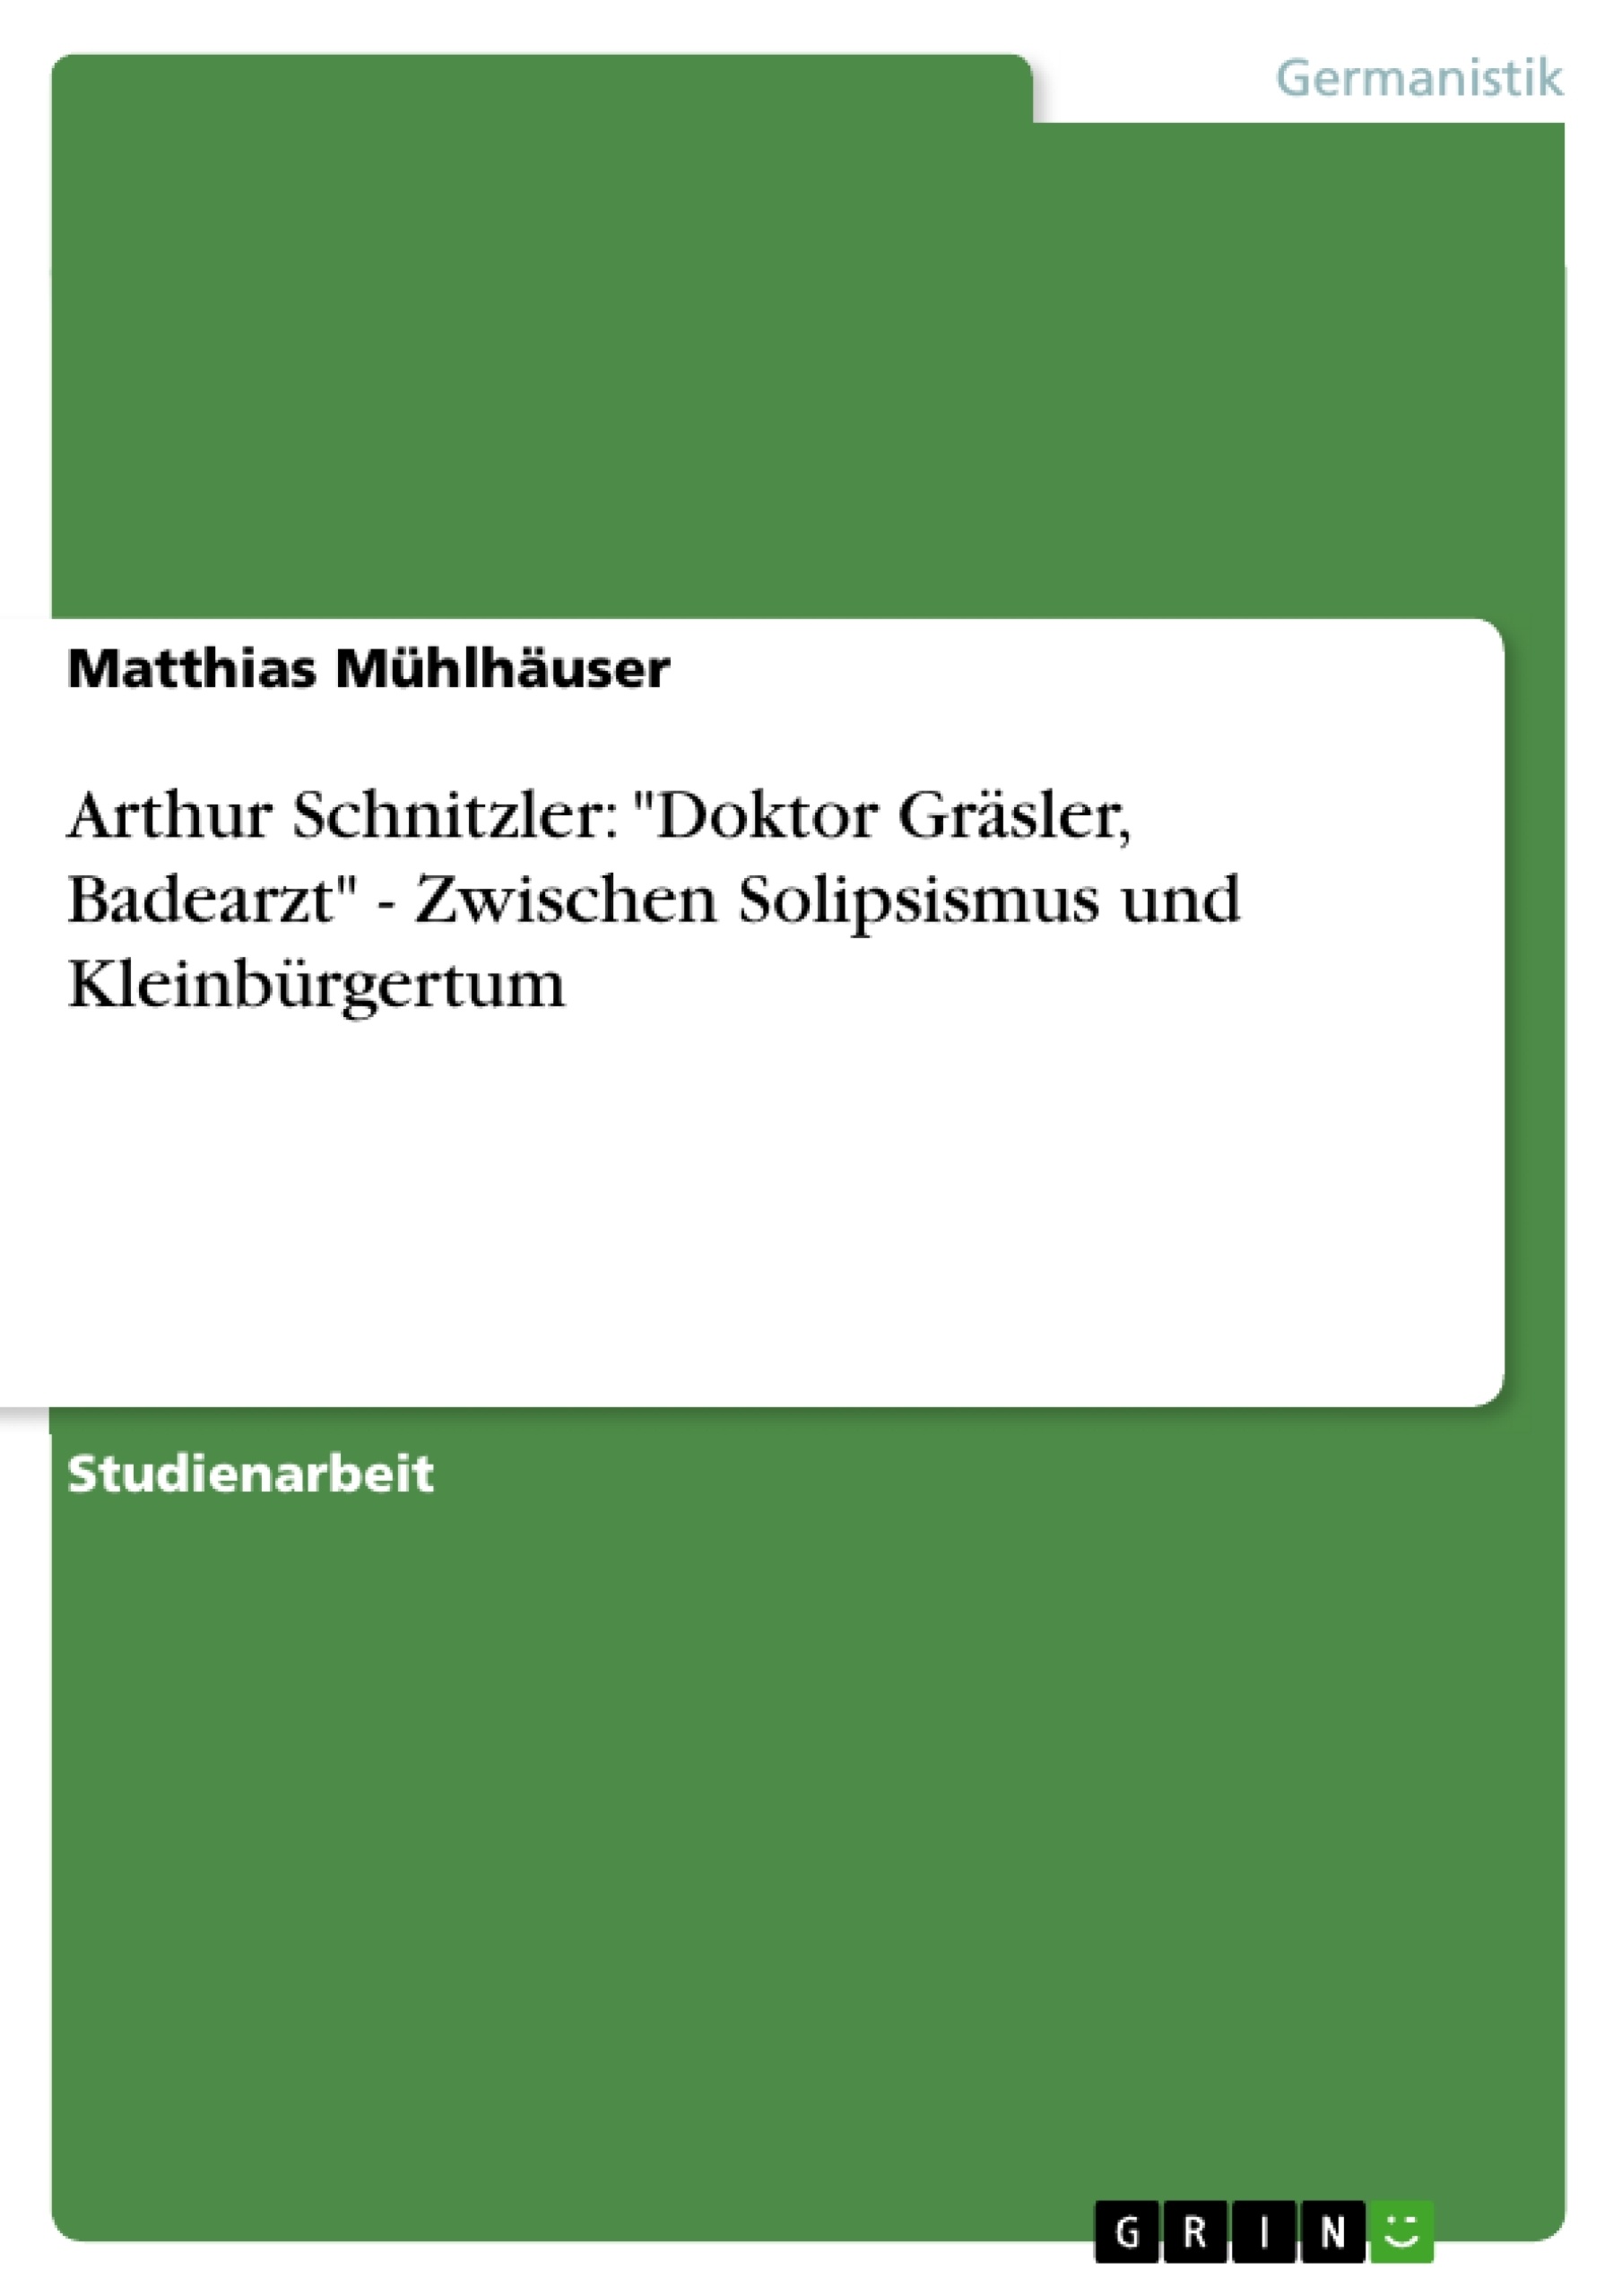 Título: Arthur Schnitzler: "Doktor Gräsler, Badearzt" - Zwischen Solipsismus und Kleinbürgertum